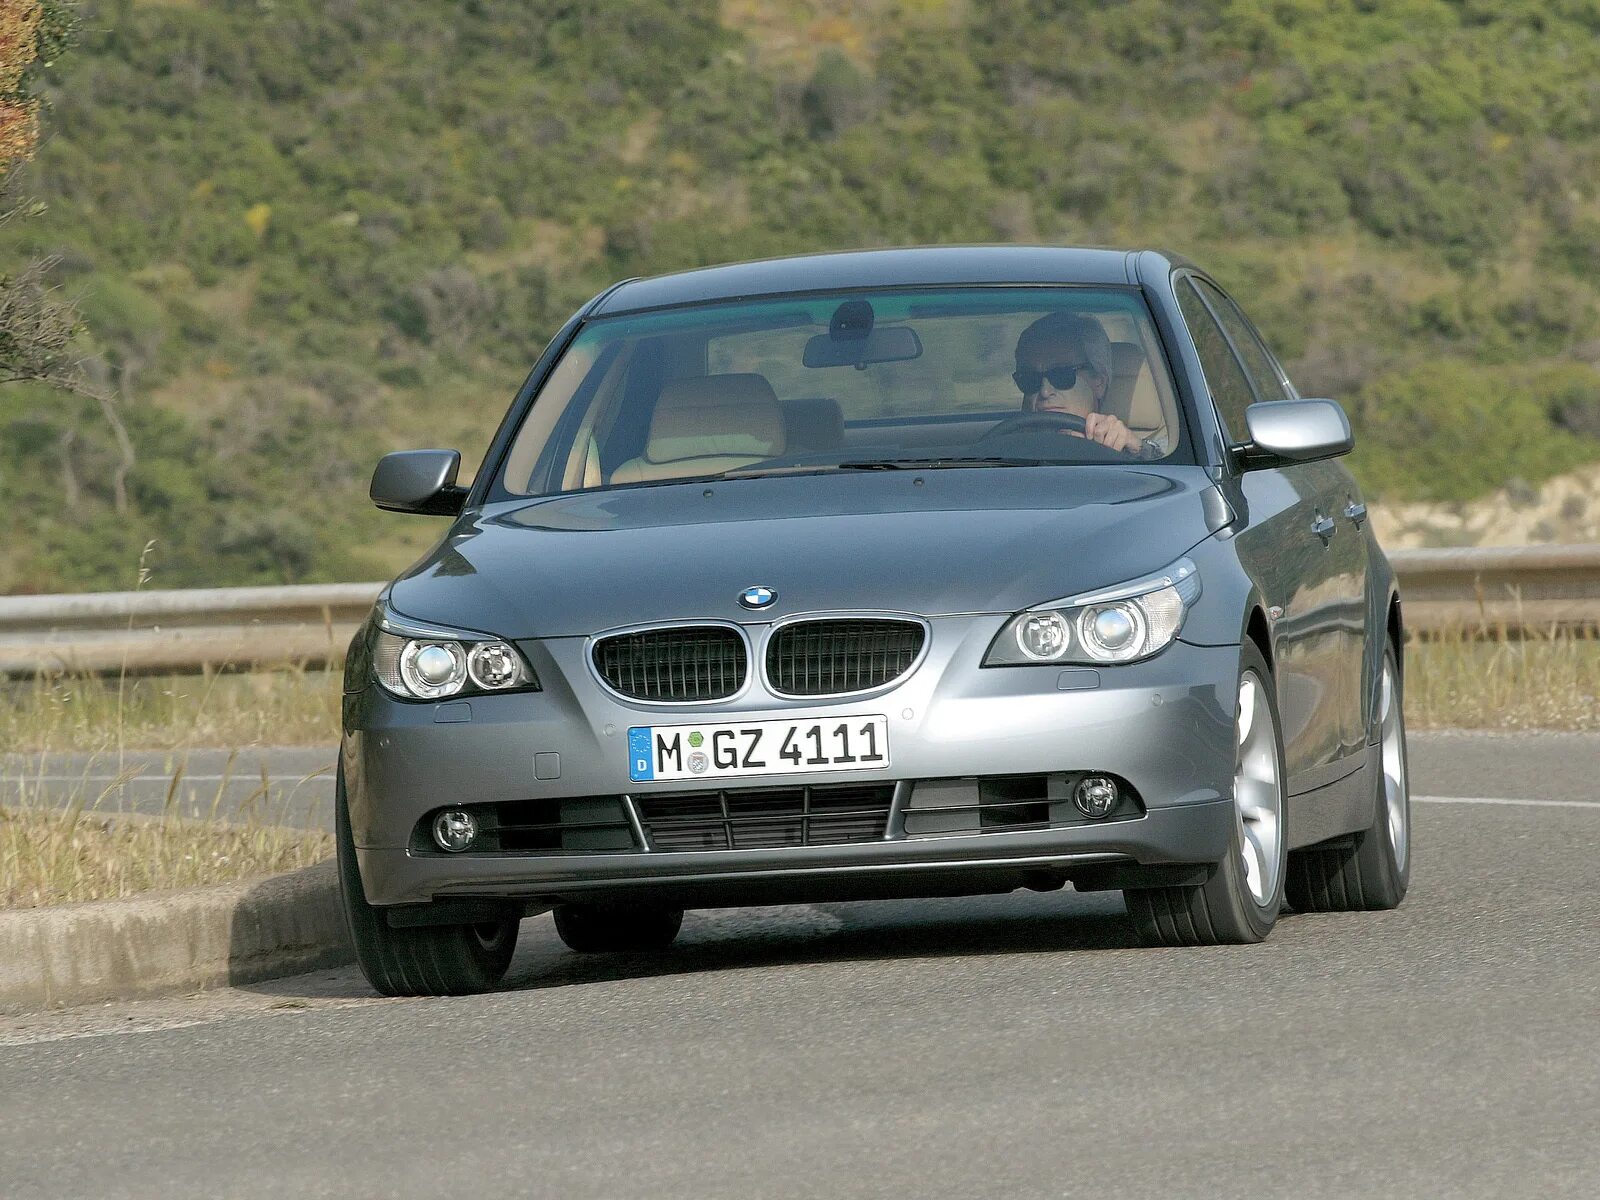 5 series e60. BMW 5 e60 2004. BMW 5 e60 2003. BMW 5 e60 530d. BMW 5 Series e60 2003.